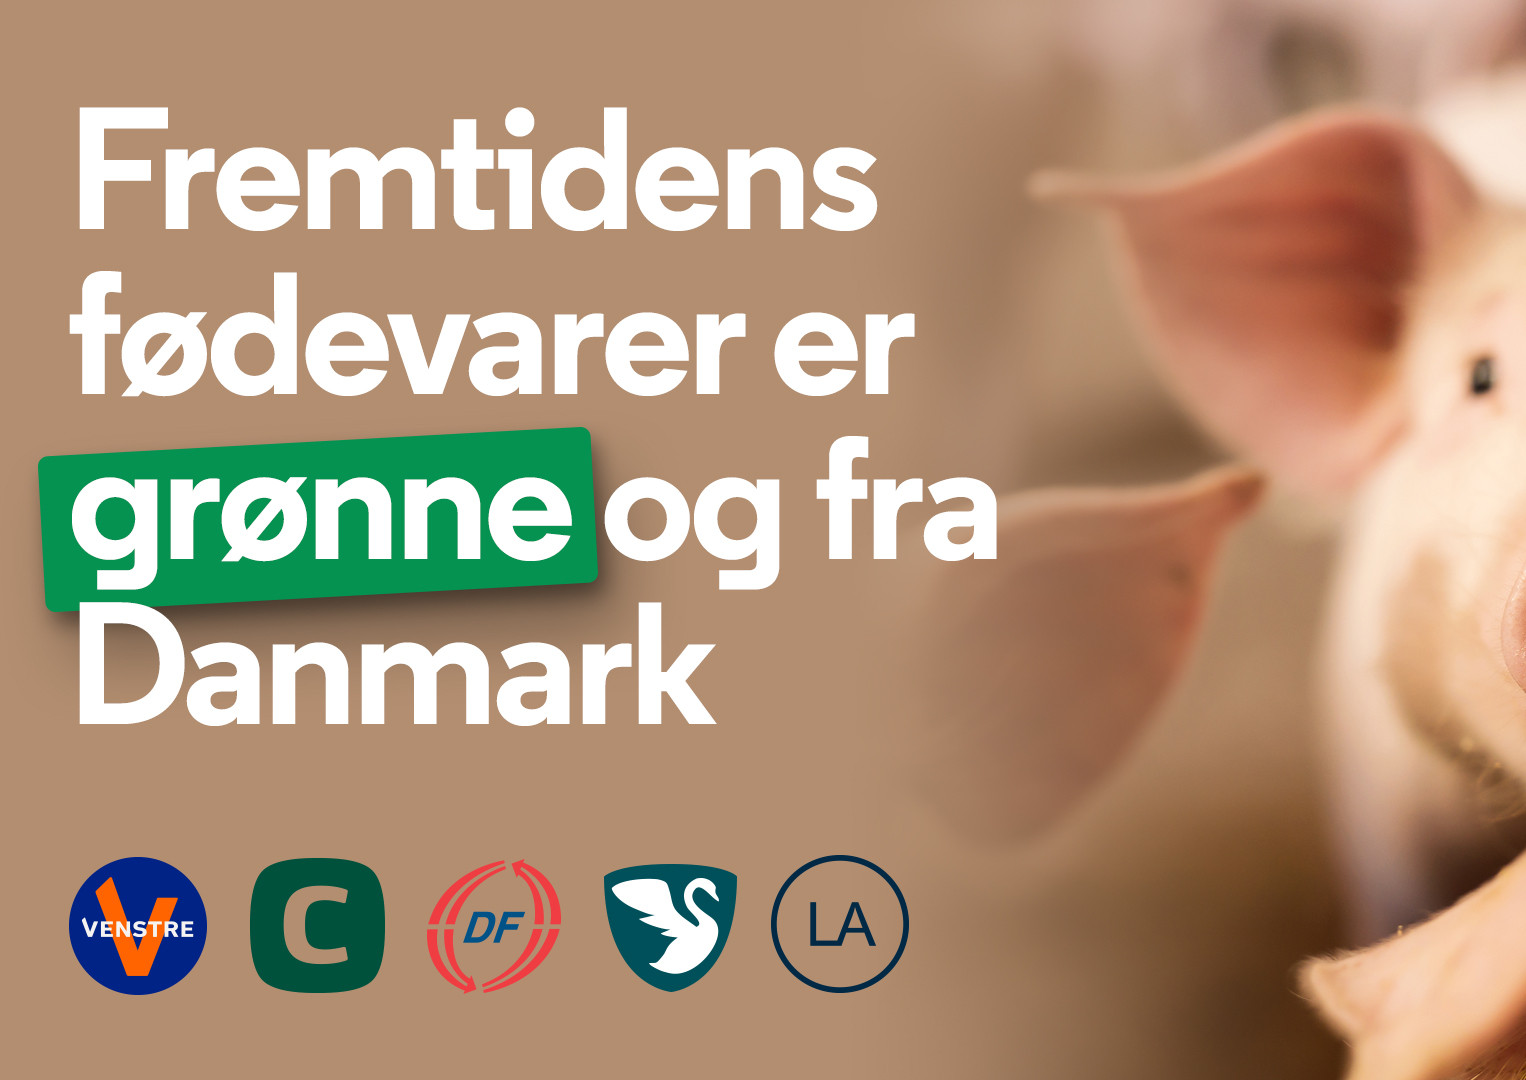 Venstres politiske udspil vil sikre, at fremtidens fødevarer er grønne og fra Danmark.